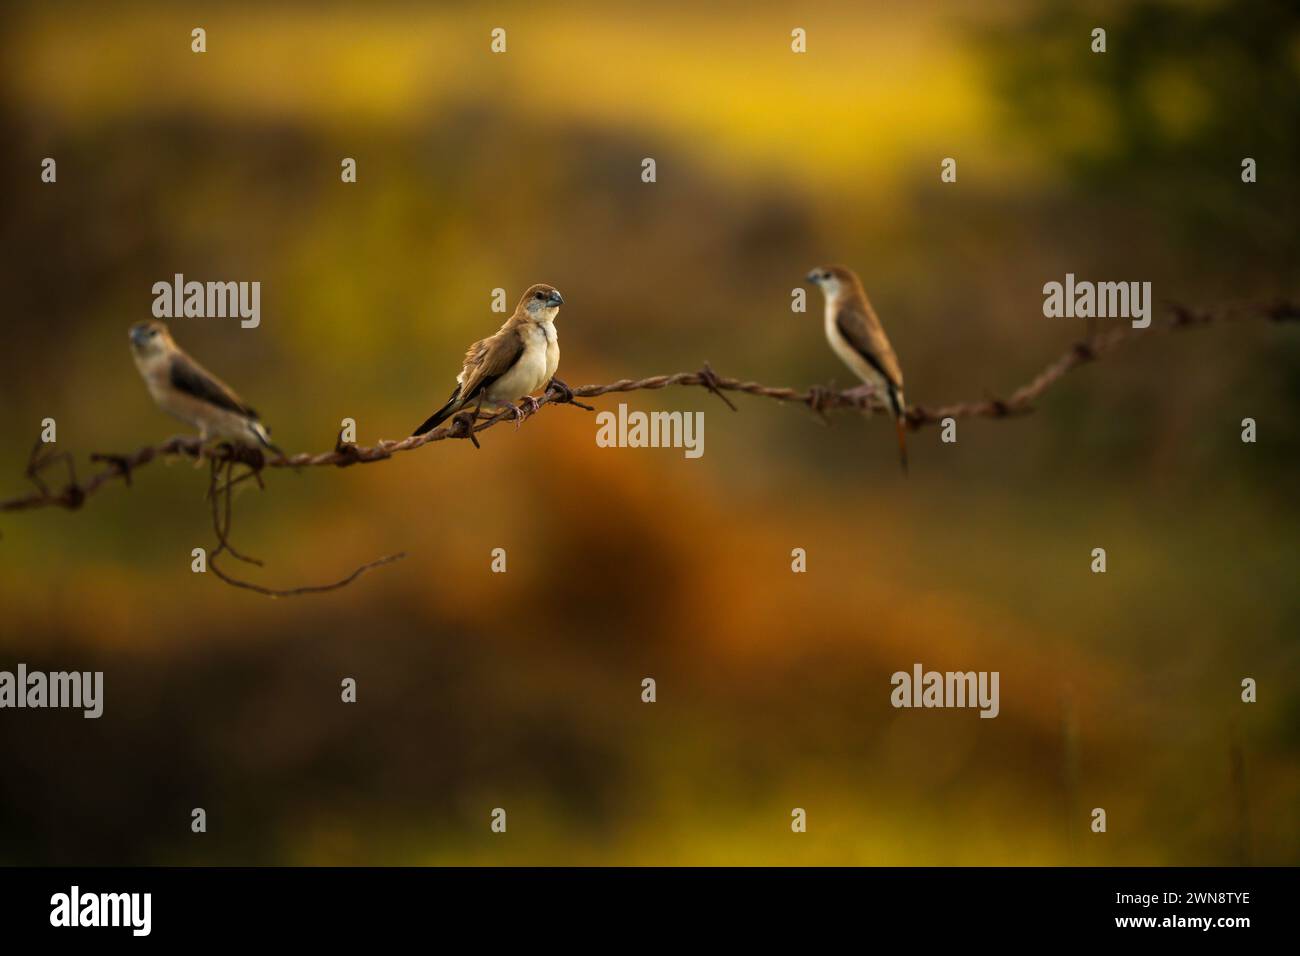 Die indischen Silberschnabelvögel auf Draht mit verschwommenem Hintergrund Stockfoto